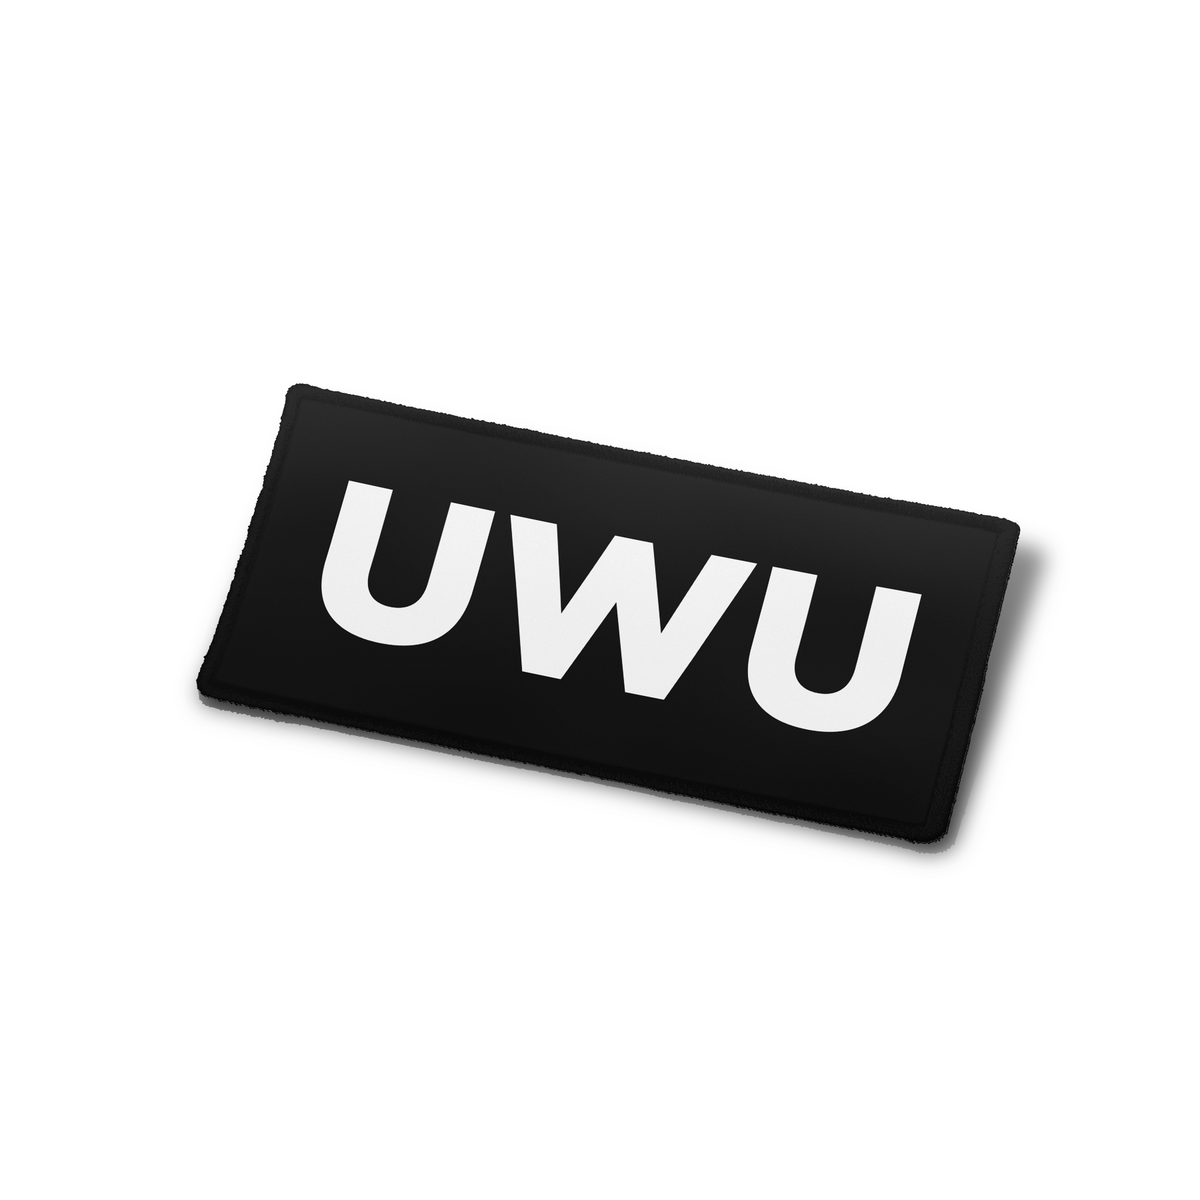 UWU - Patch